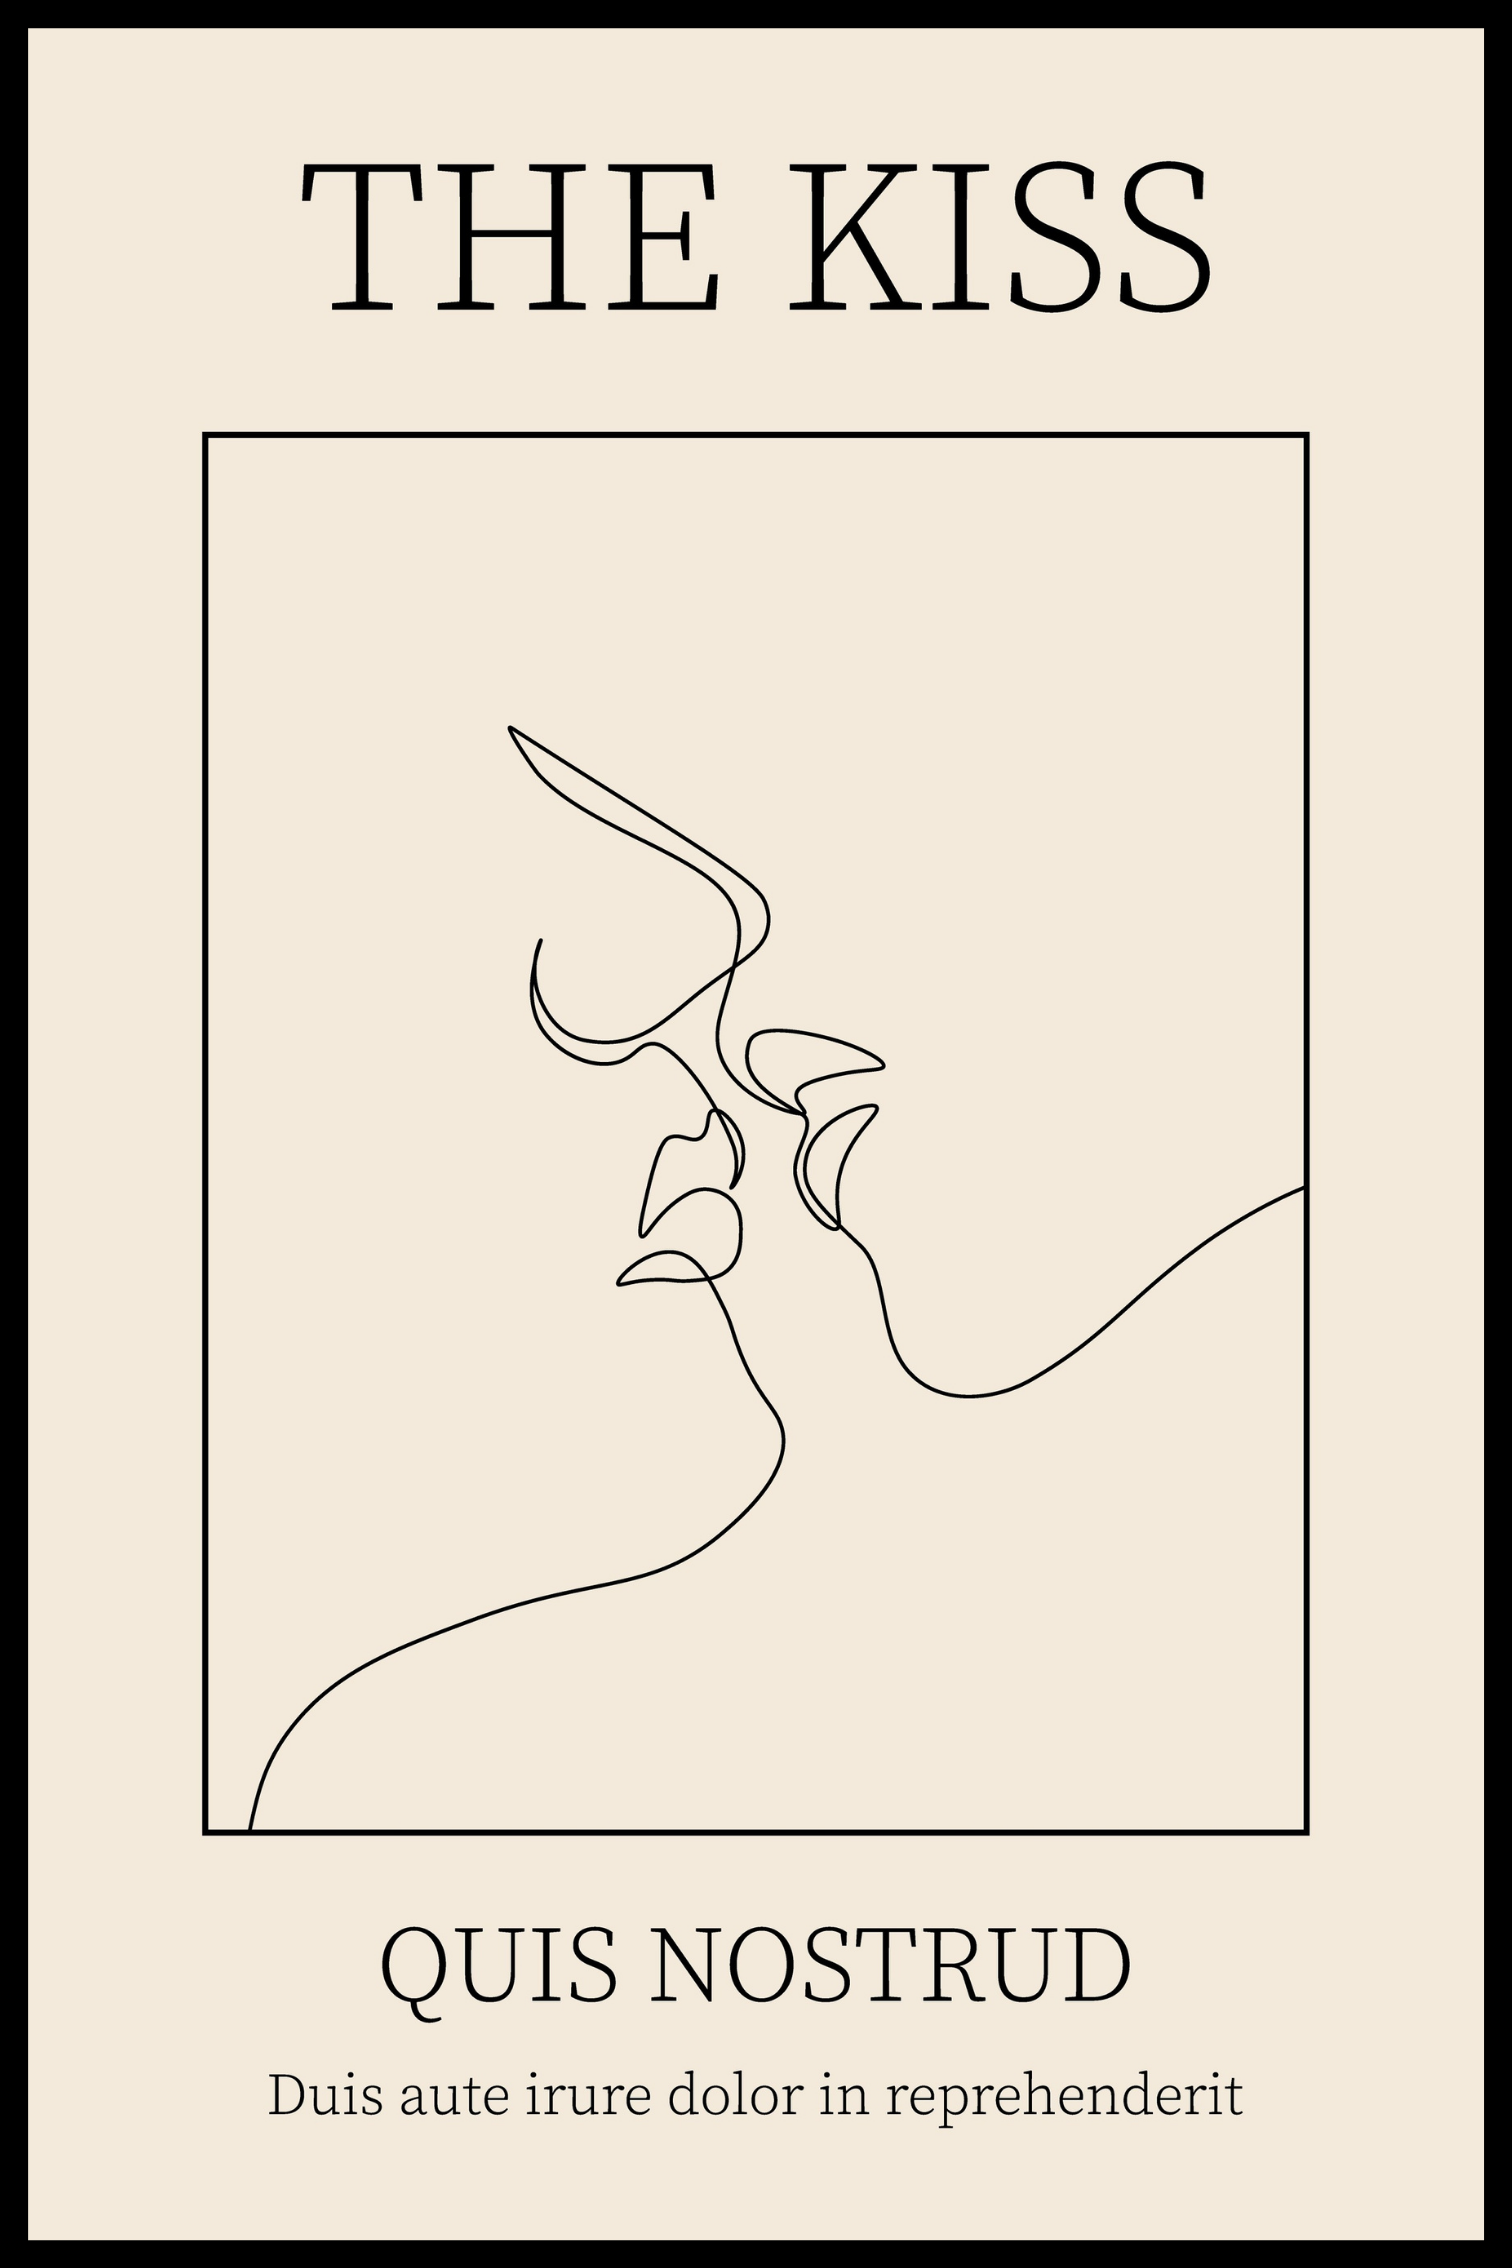 The kiss plakat